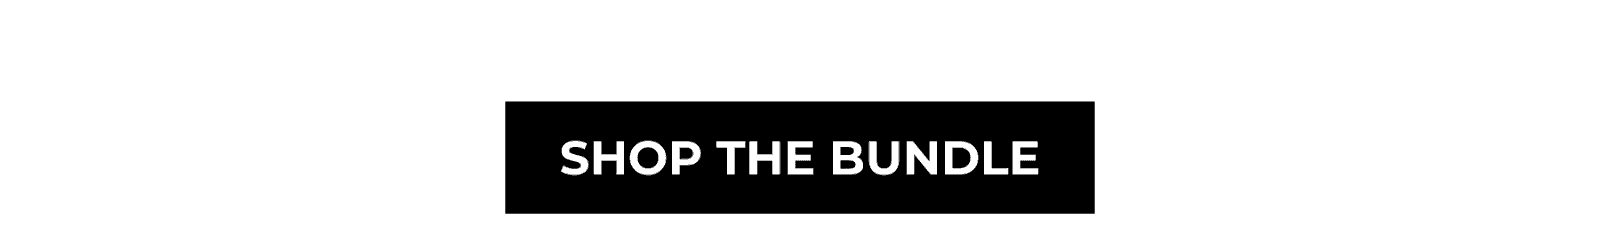 SHOP THE BUNDLE